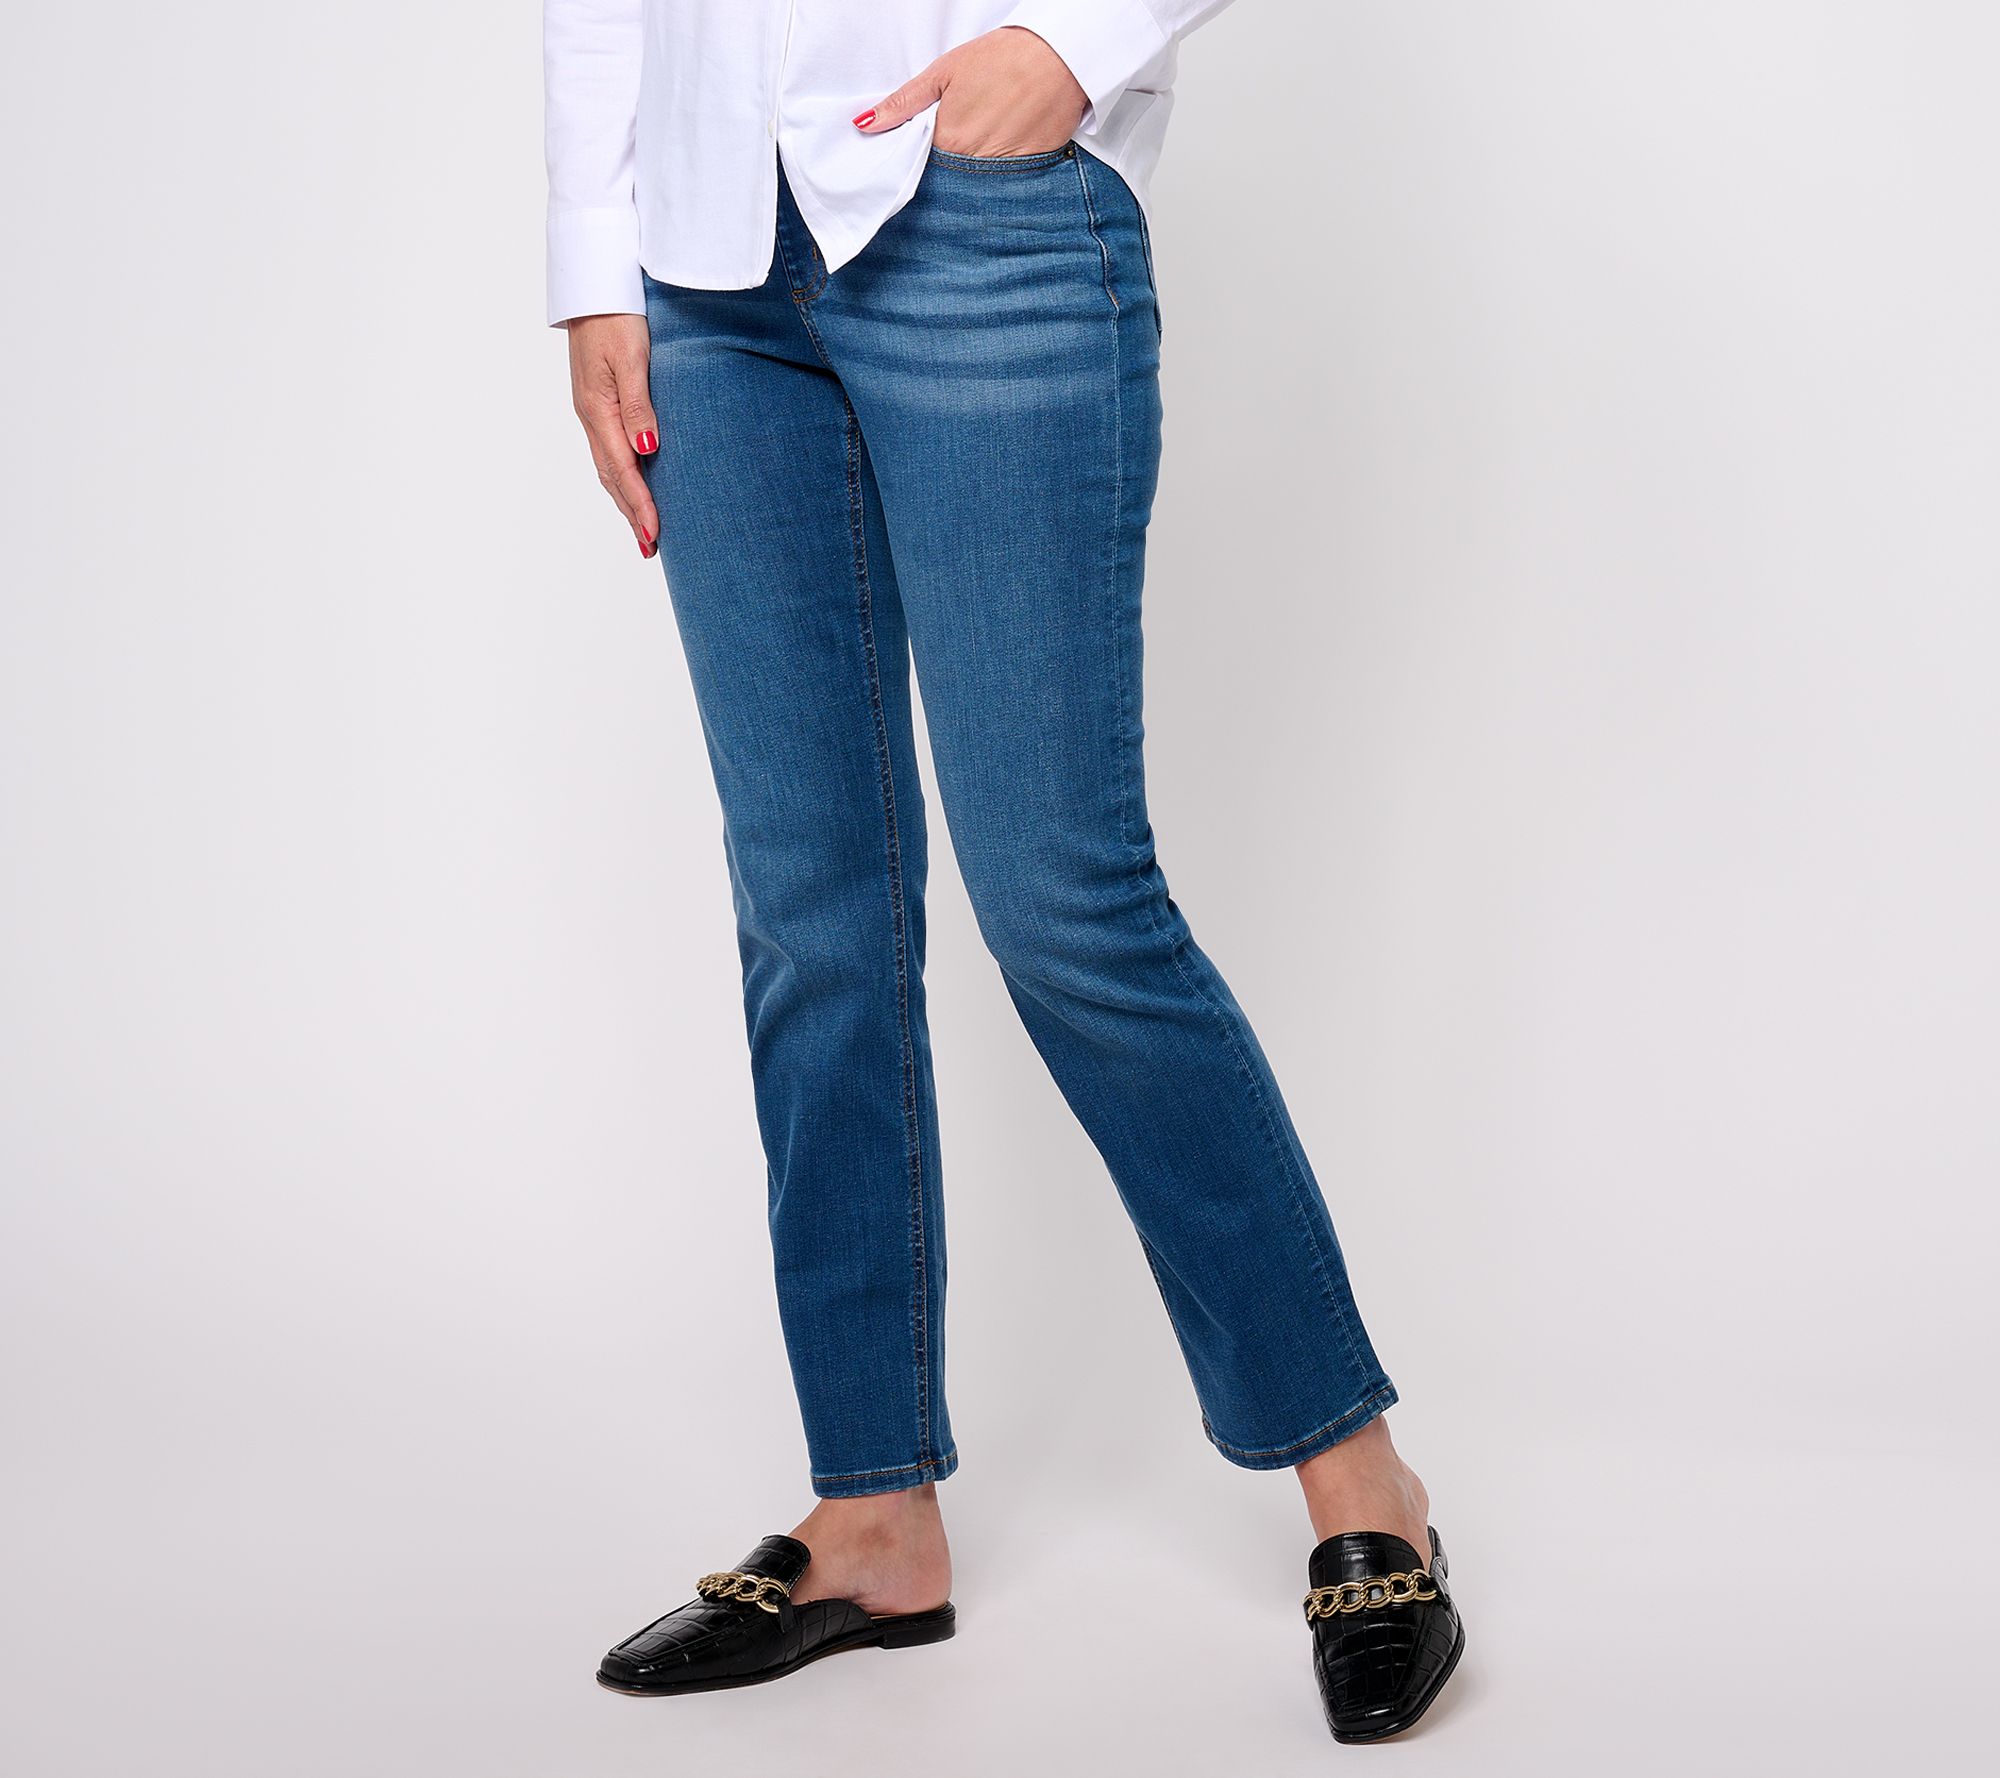 Feeling blue: Women more likely to wear jeans when depressed - Mirror Online